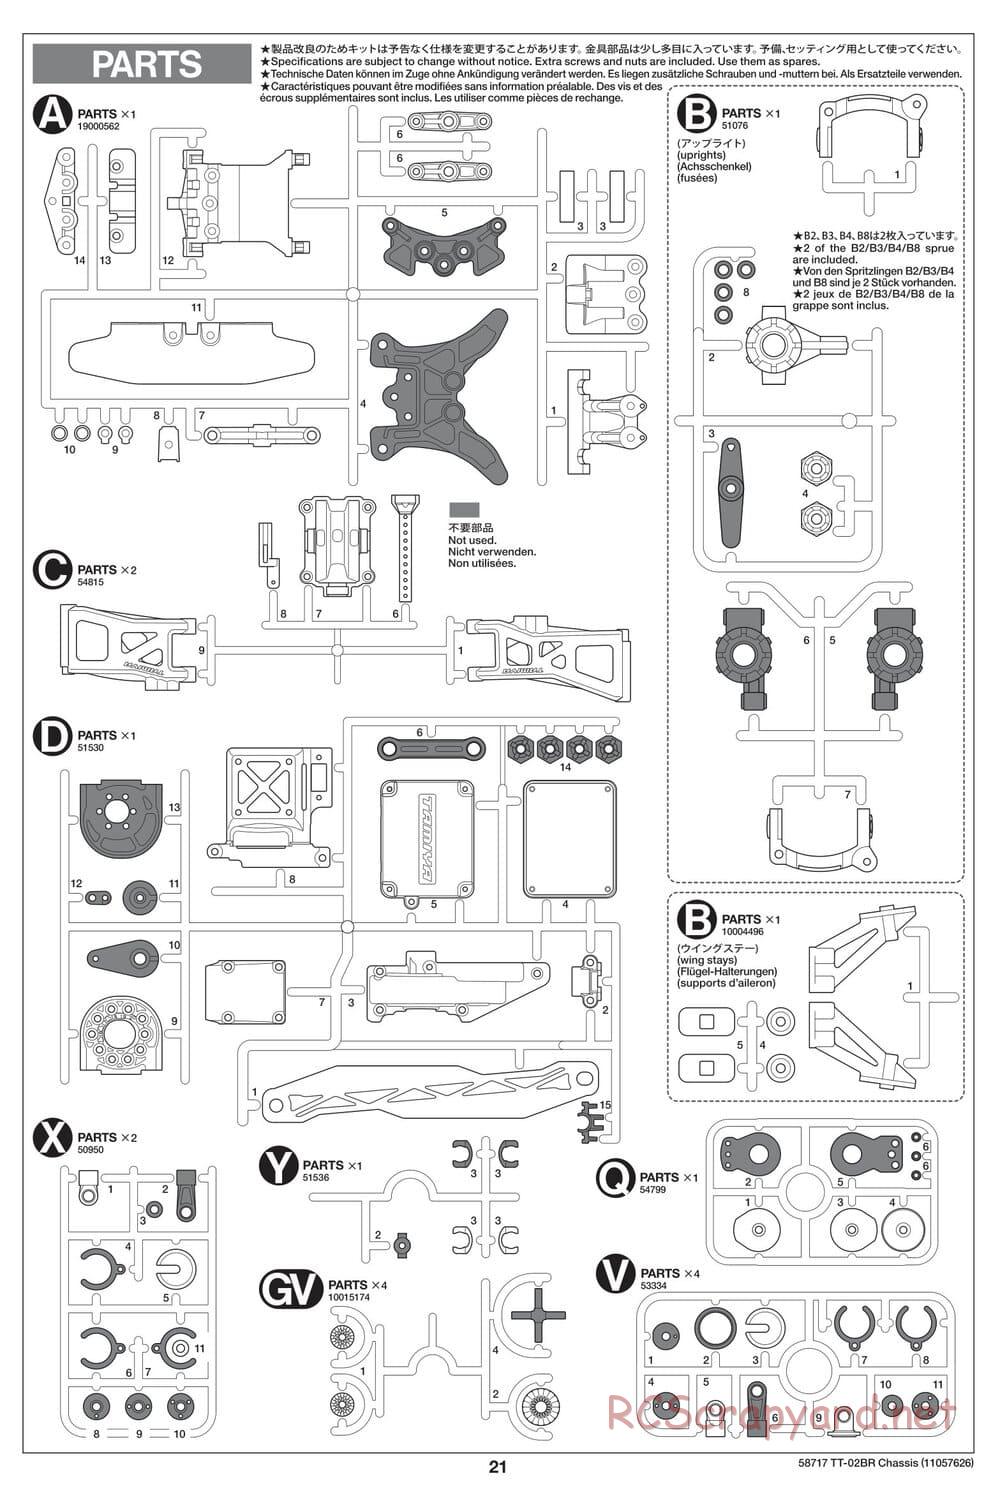 Tamiya - TT-02BR Chassis - Manual - Page 21